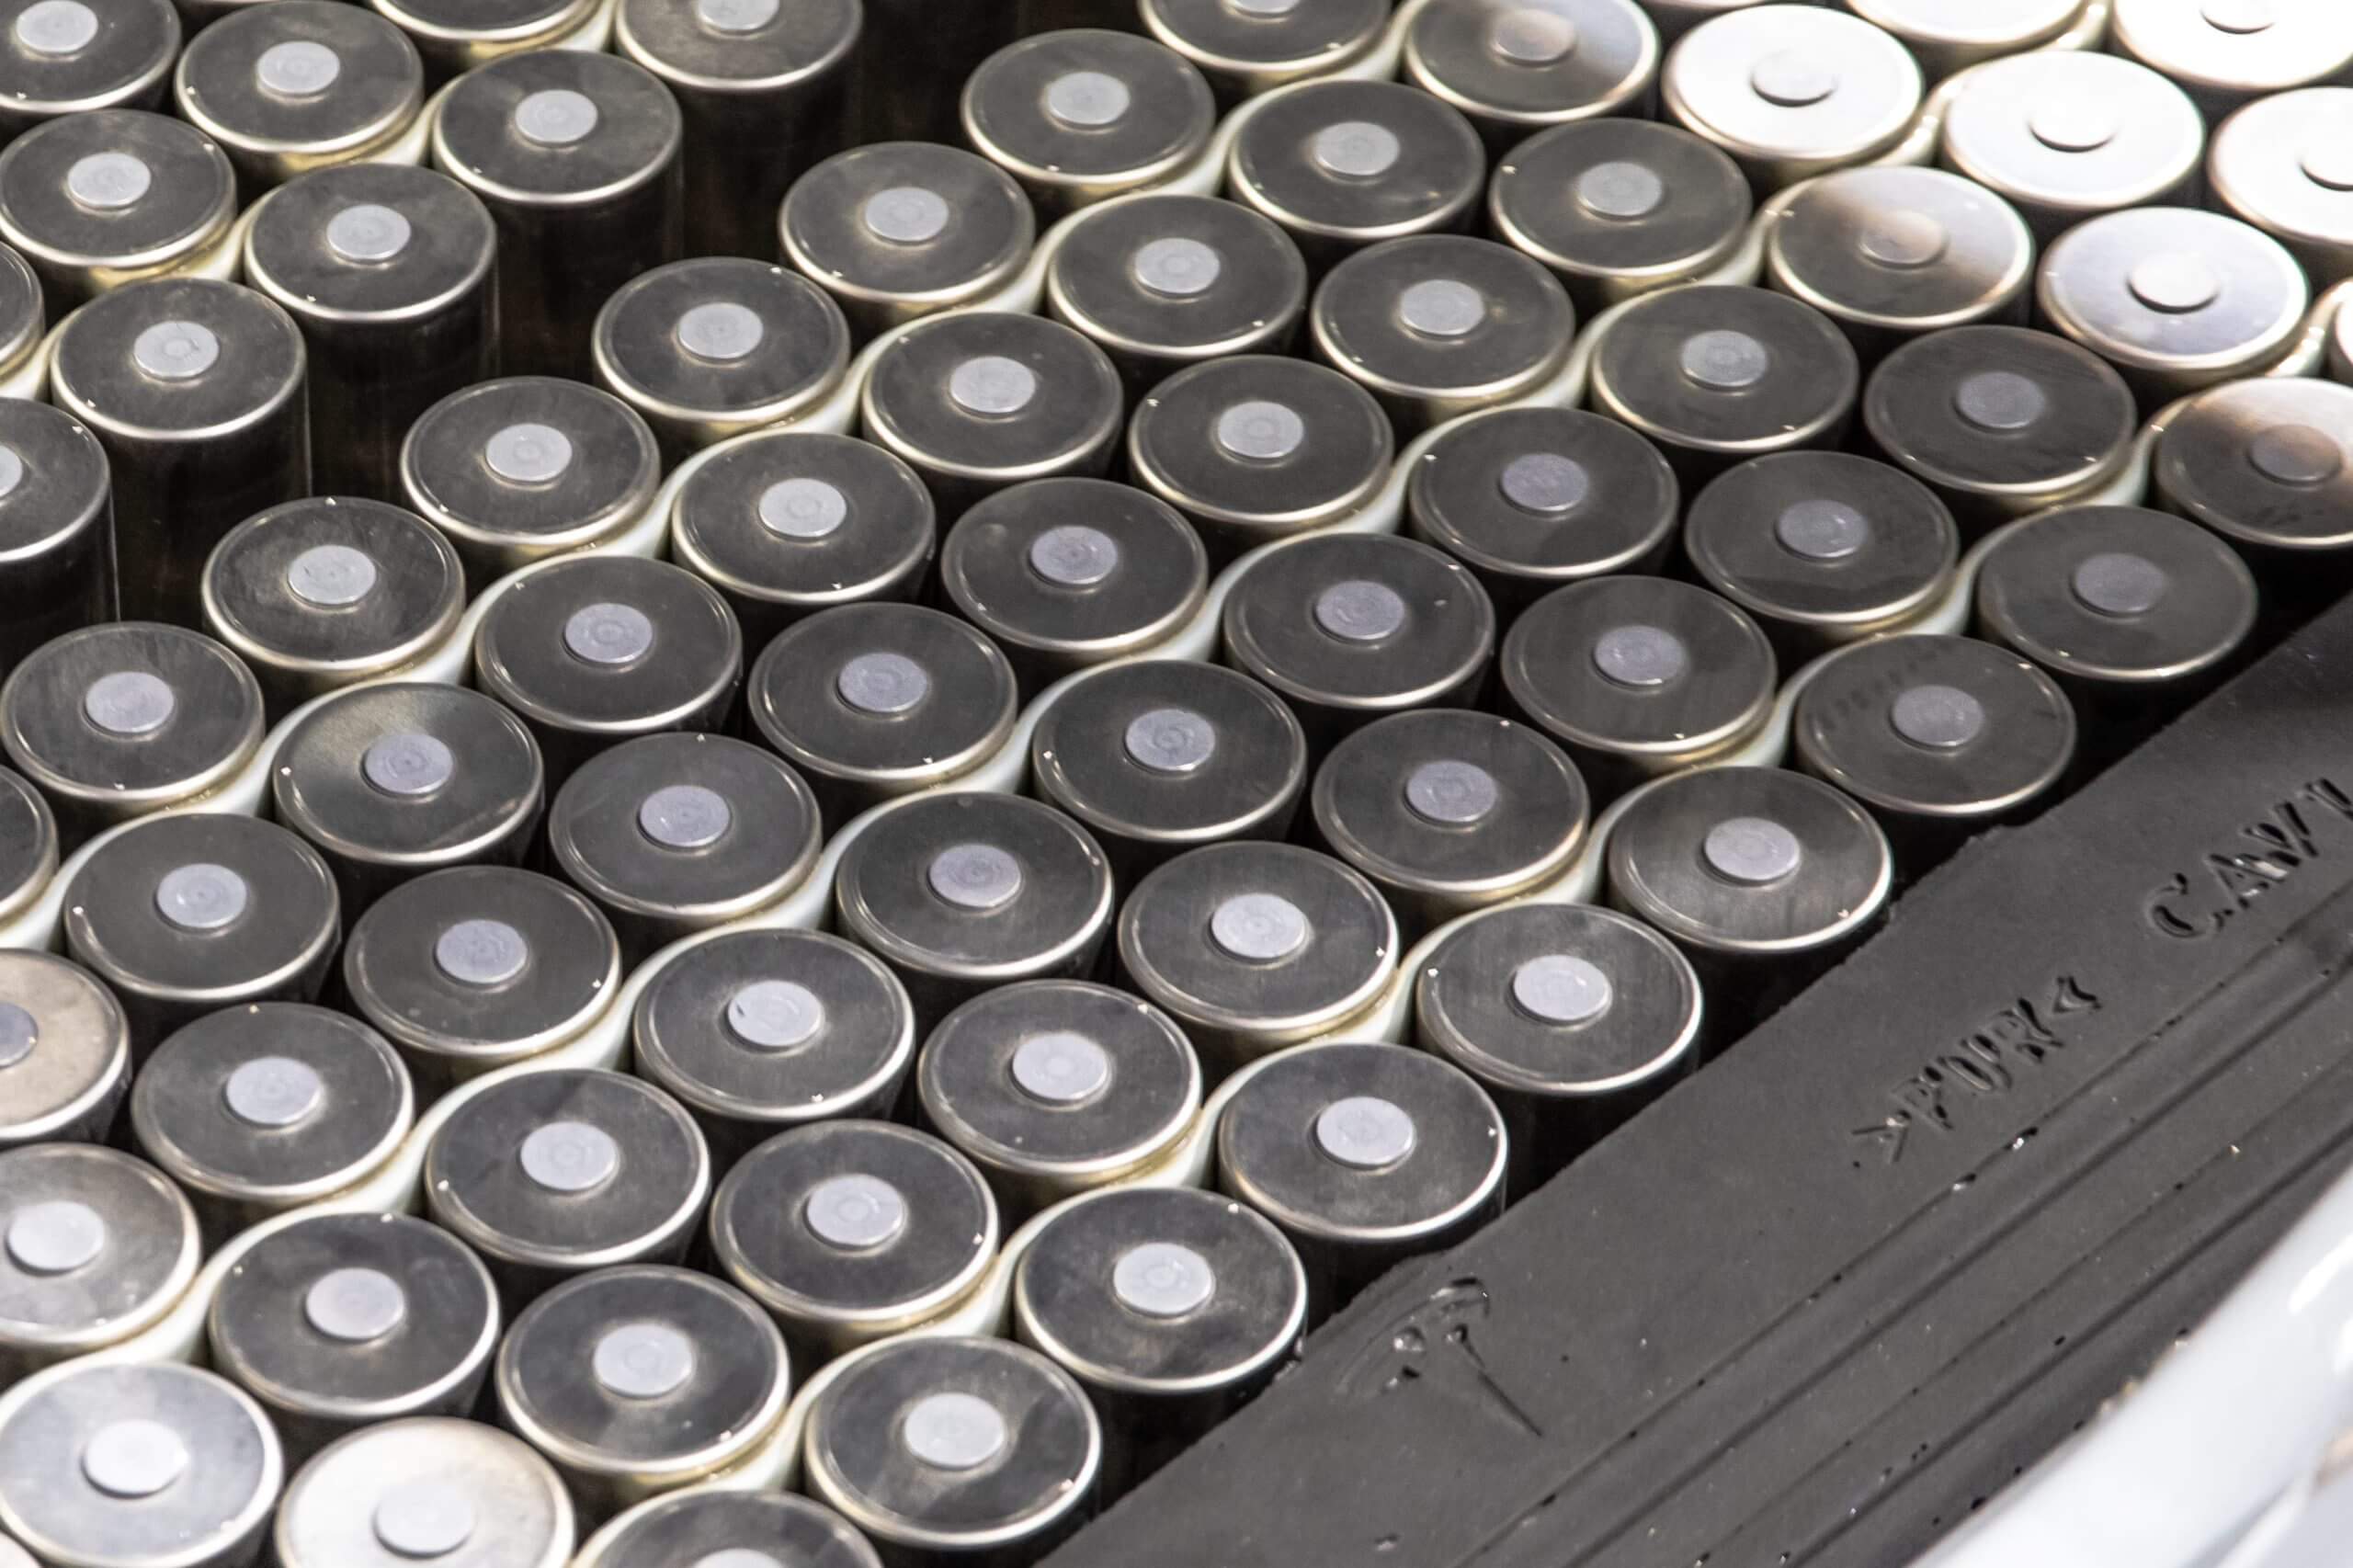 特斯拉 4680 电池周产量现可供 1000 辆 Cybertruck 使用